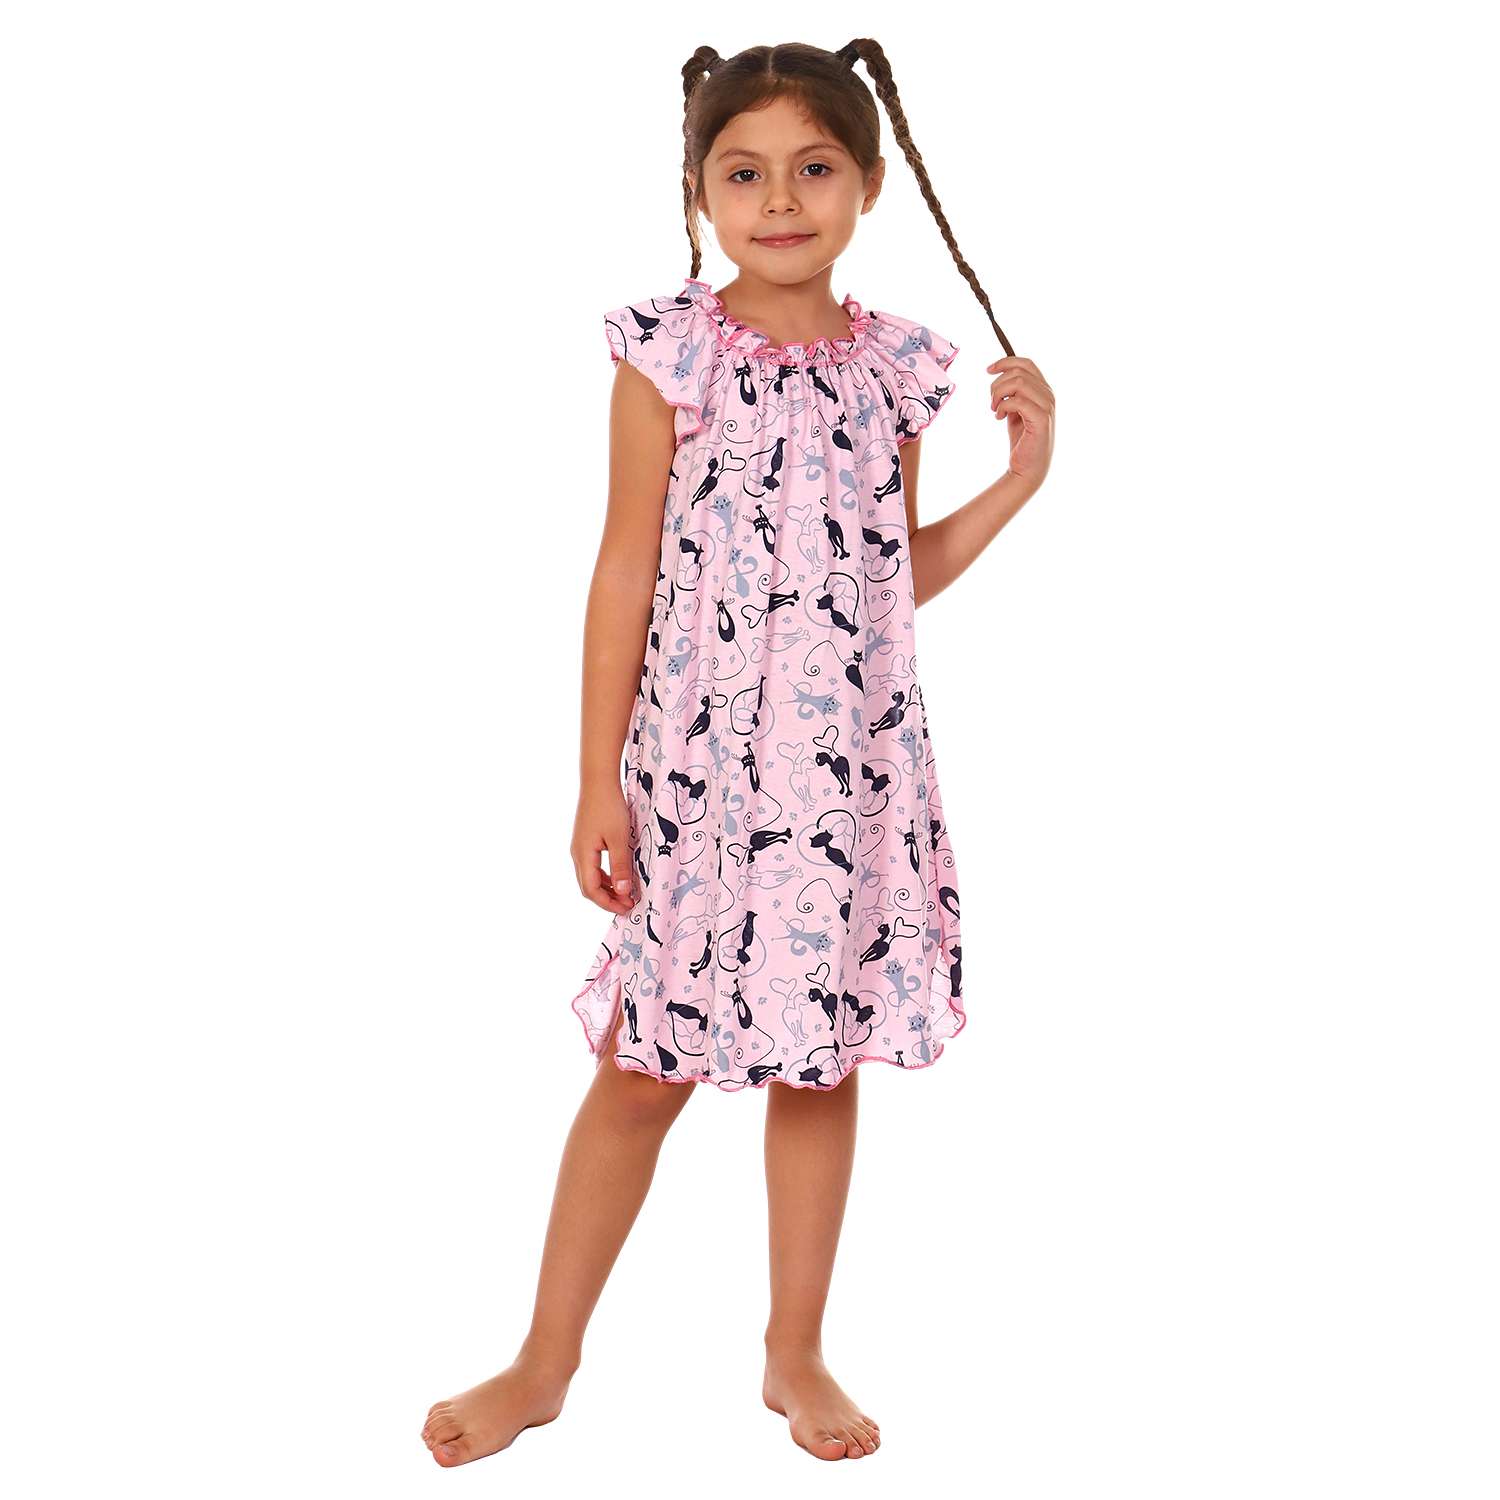 Сорочка ночная Детская Одежда 0003К/розовый - фото 2